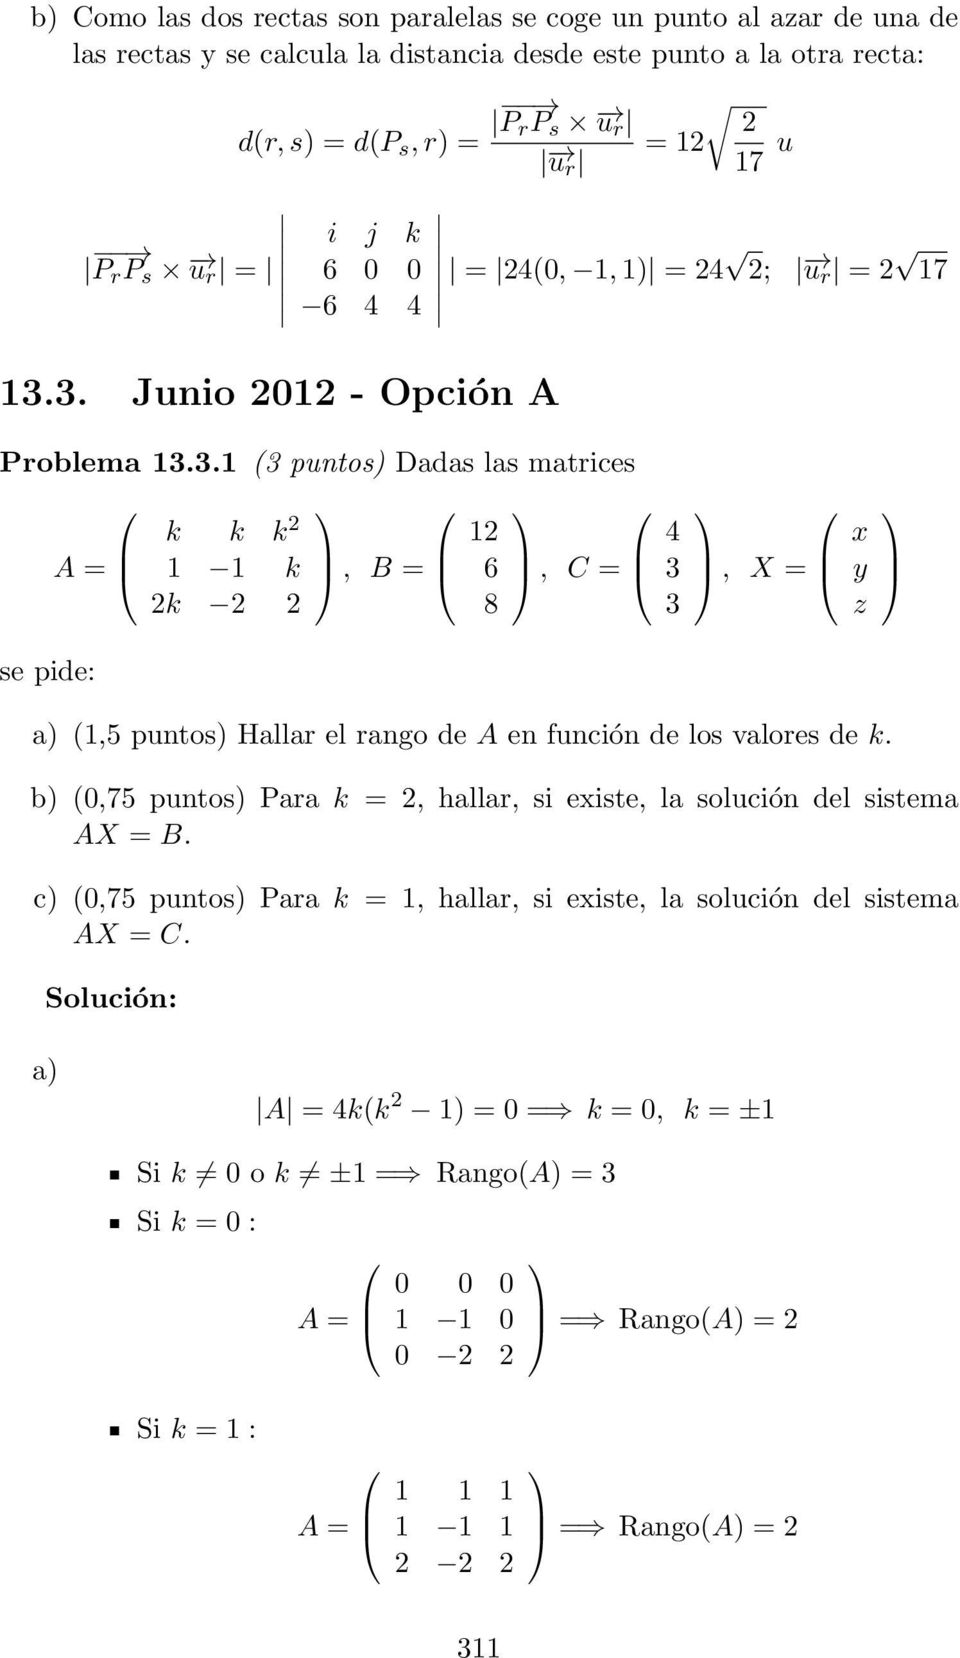 3. Junio 01 - Opción A Problema 13.3.1 (3 puntos) Dadas las matrices k k k 1 1 k k, B = = 4(0, 1, 1) = 4 ; u r = 17 1 6 8, C = 4 3 3, X = (1,5 puntos) Hallar el rango de A en función de los valores de k.